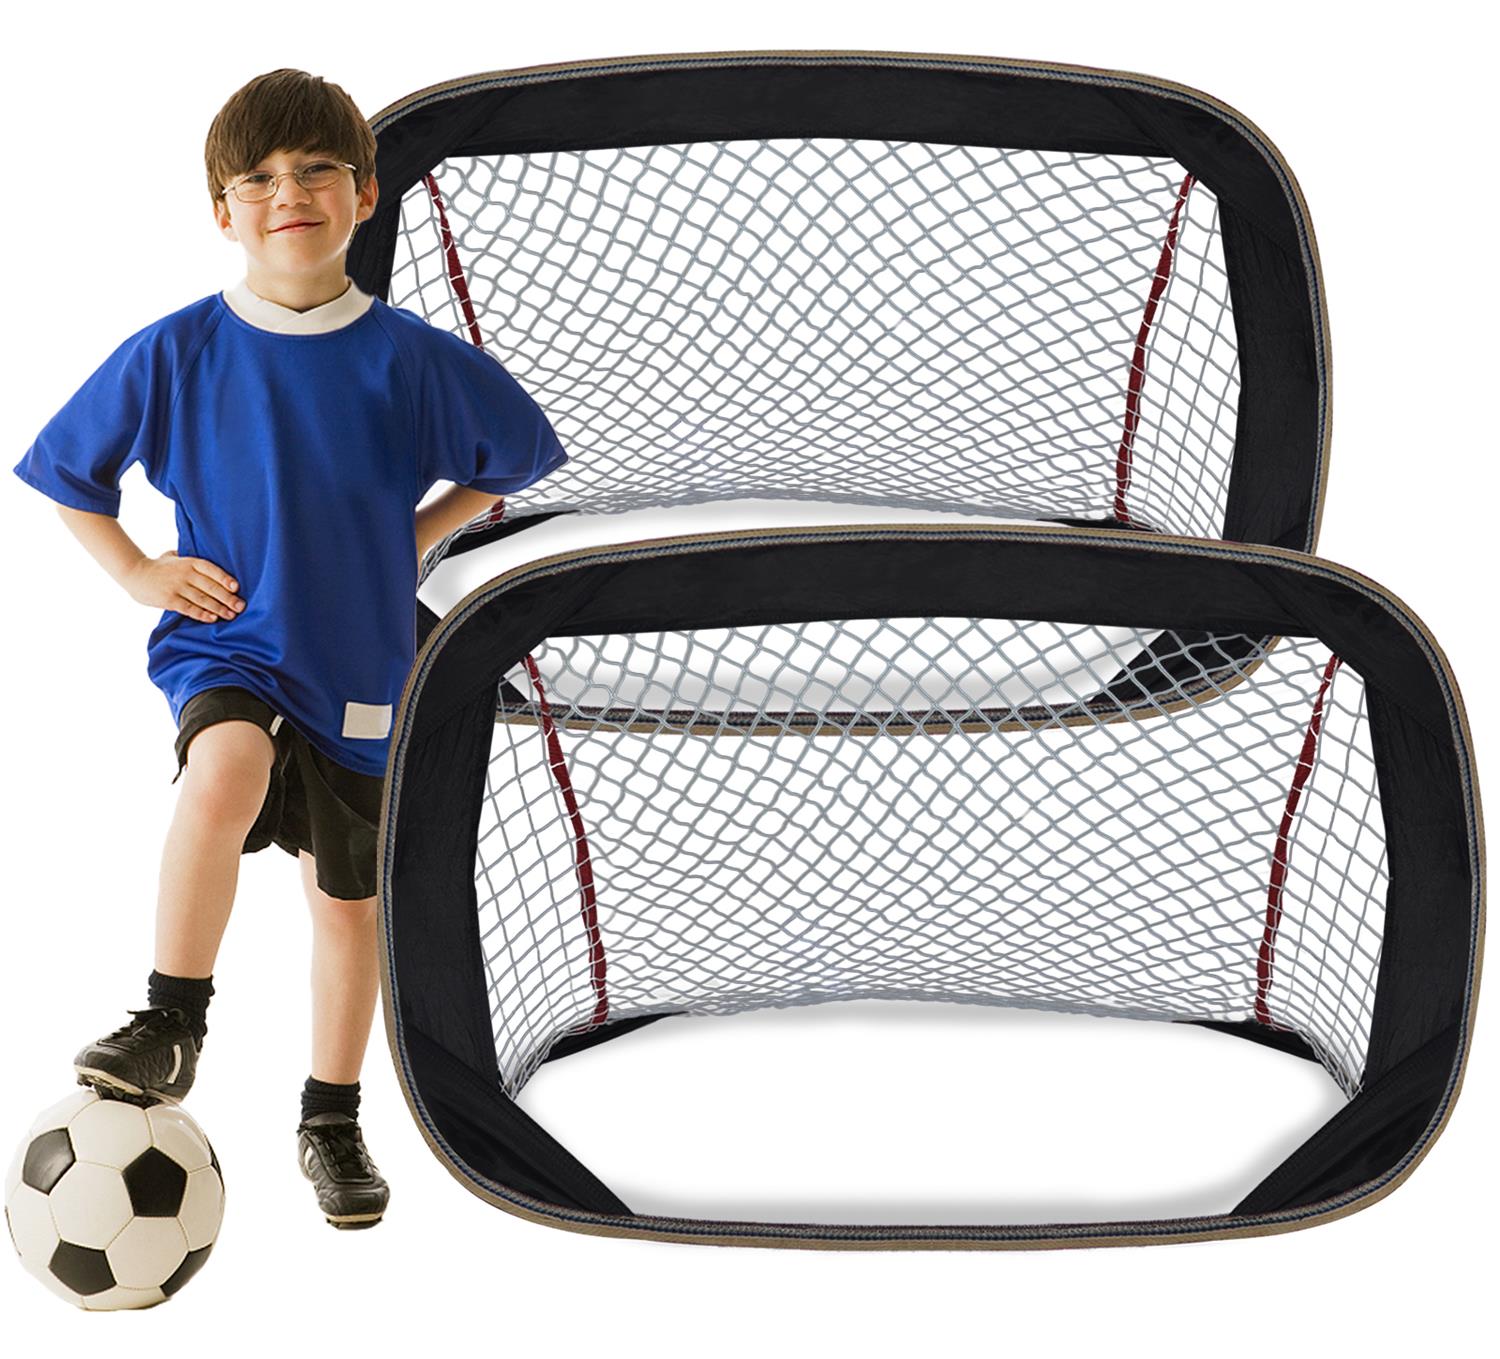 サッカーゴール　サッカーネット　ミニサッカーゴール　折りたたみ式　2個セット　サッカーゲーム用ネット　子供向け　88x62x62cm